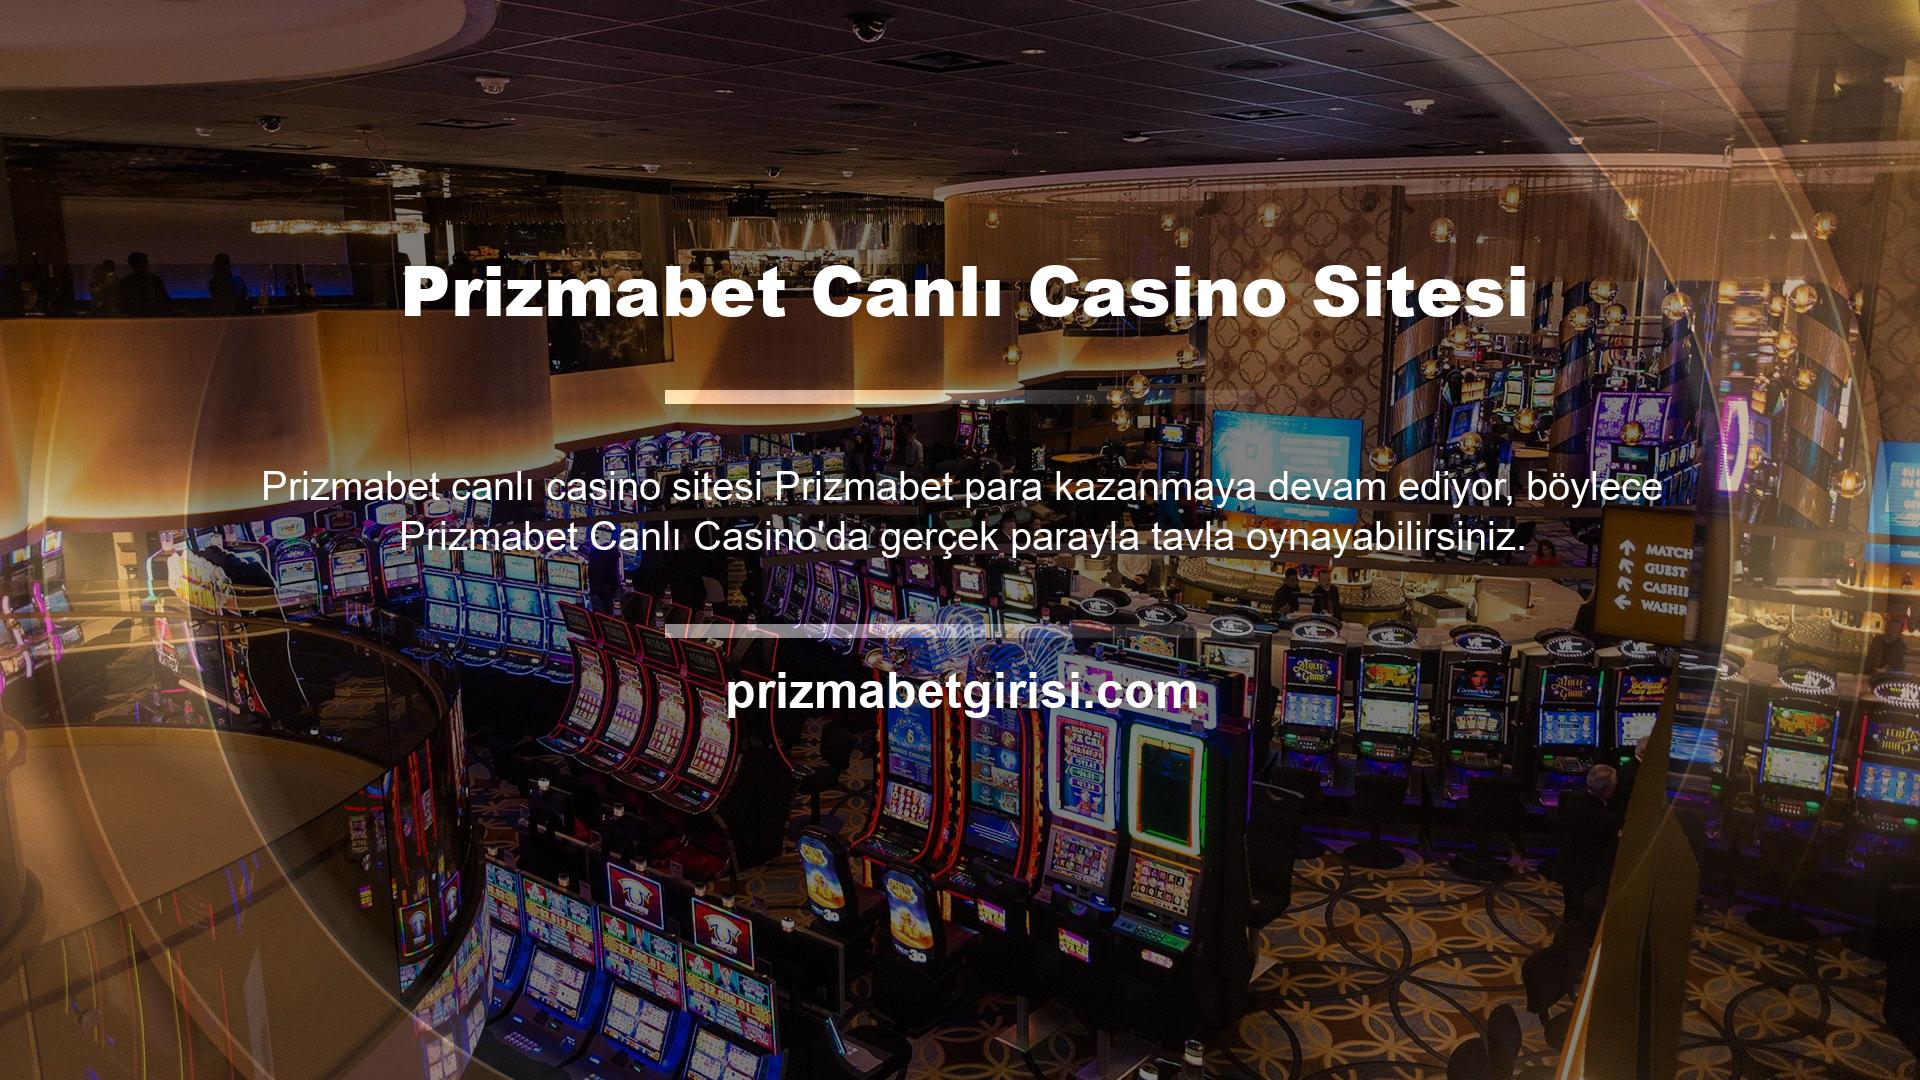 Prizmabet, kazançlarınızı kolaylıkla çekebilmeniz için gerekli ortamı oluşturan güvenilir casino siteleri denilince akla gelen ilk sitelerden biridir